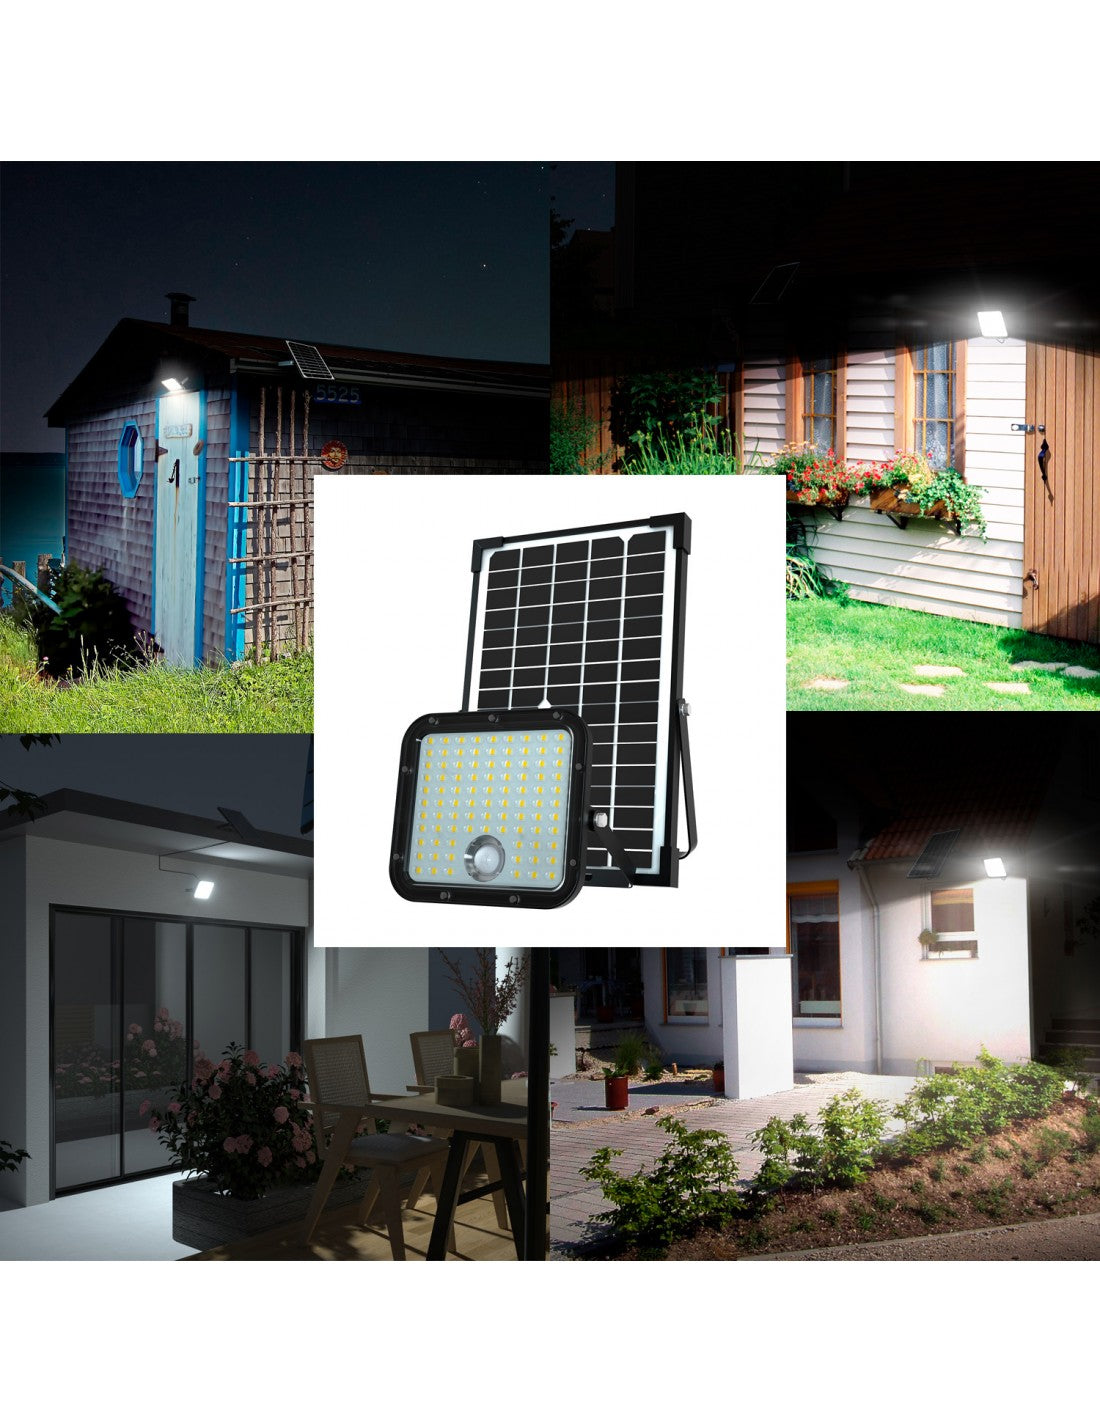 Proiettore LED a carica solare 4800 lumen, con rilevatore di presenza. Pannello solare deportato - Velamp SL366